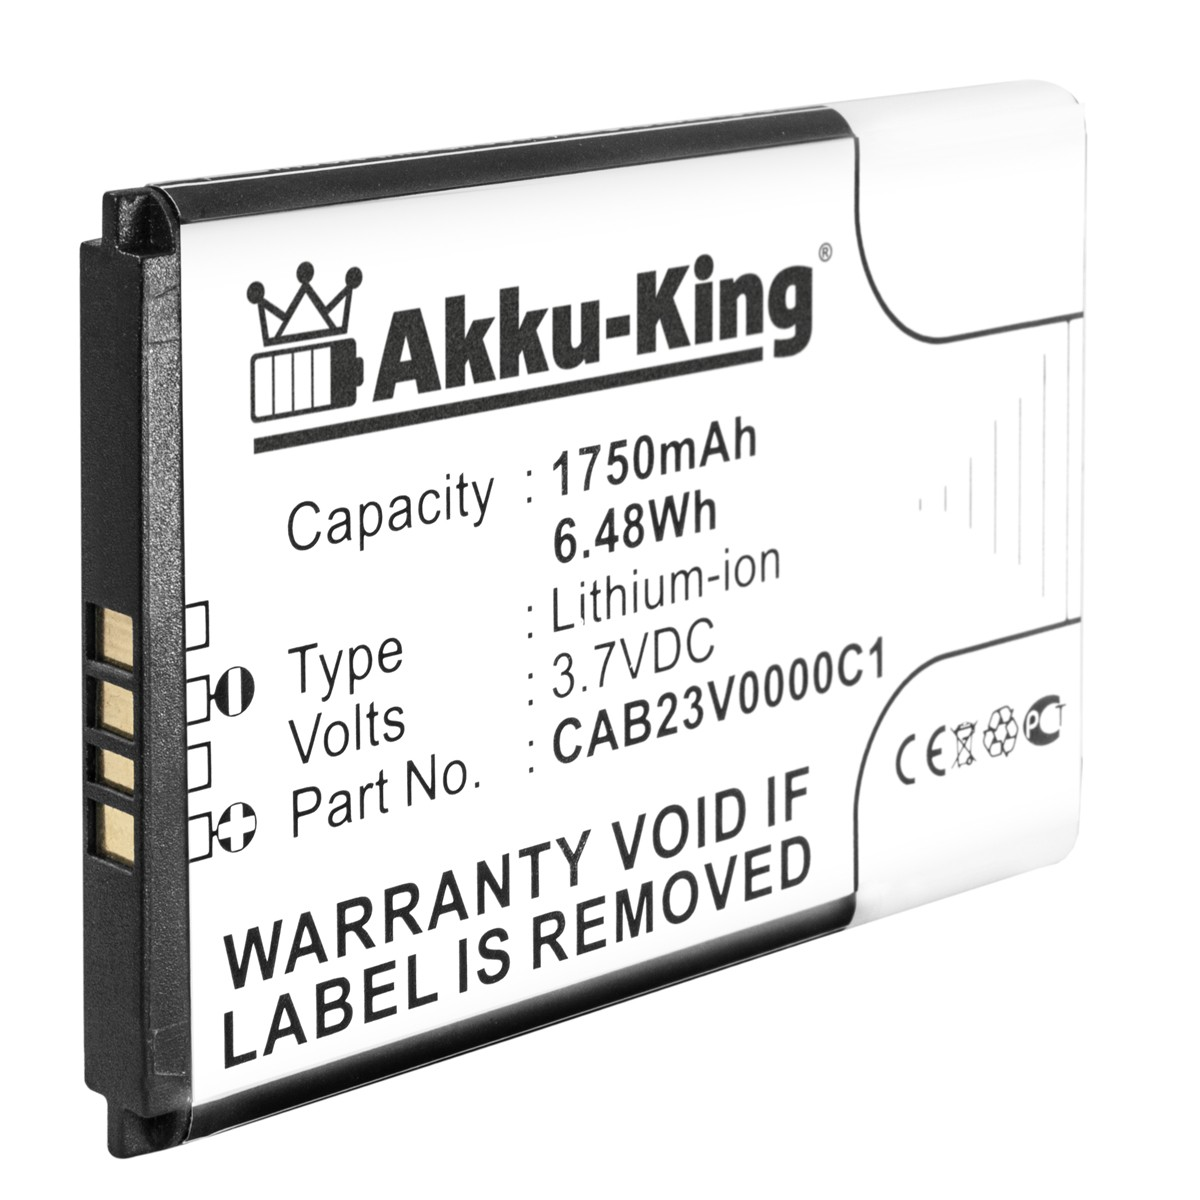 AKKU-KING Akku Volt, Alcatel Li-Ion 3.7 für CAB23V0000C1 1750mAh Handy-Akku